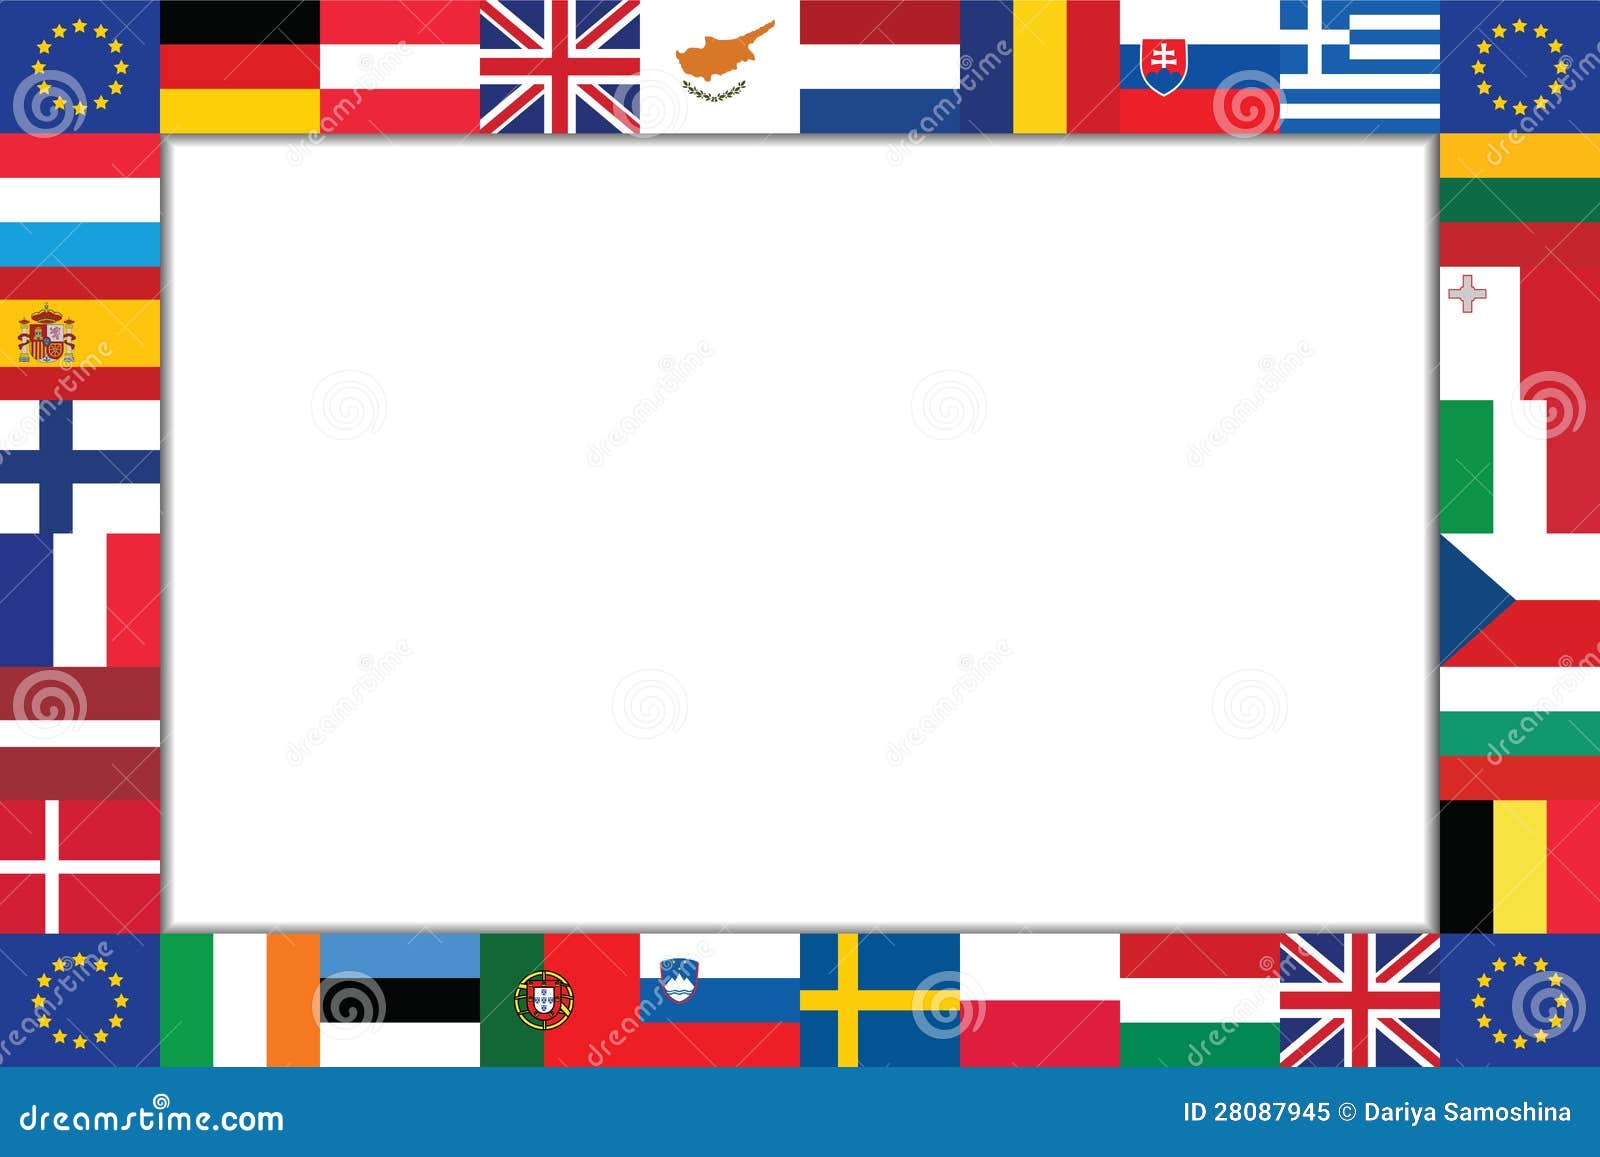 clipart european flags - photo #44